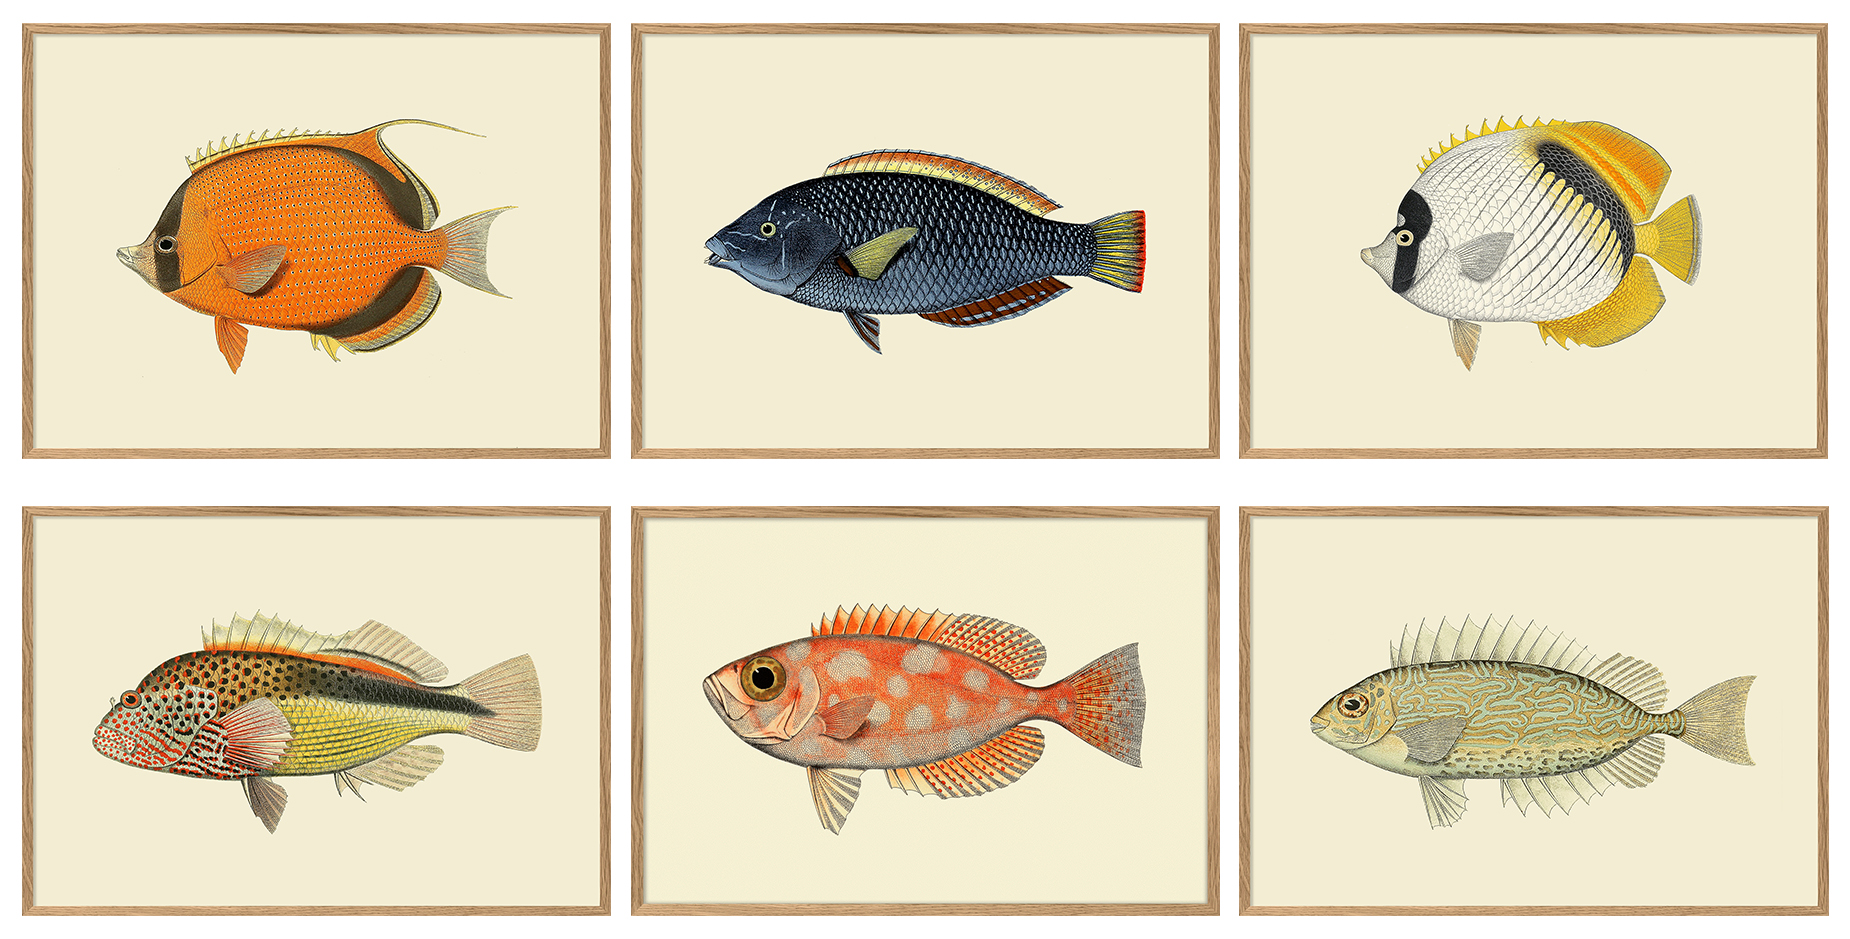 The Dybdahl Co. udbygger sit fantastiske univers med endnu en farverig serie af fisk.